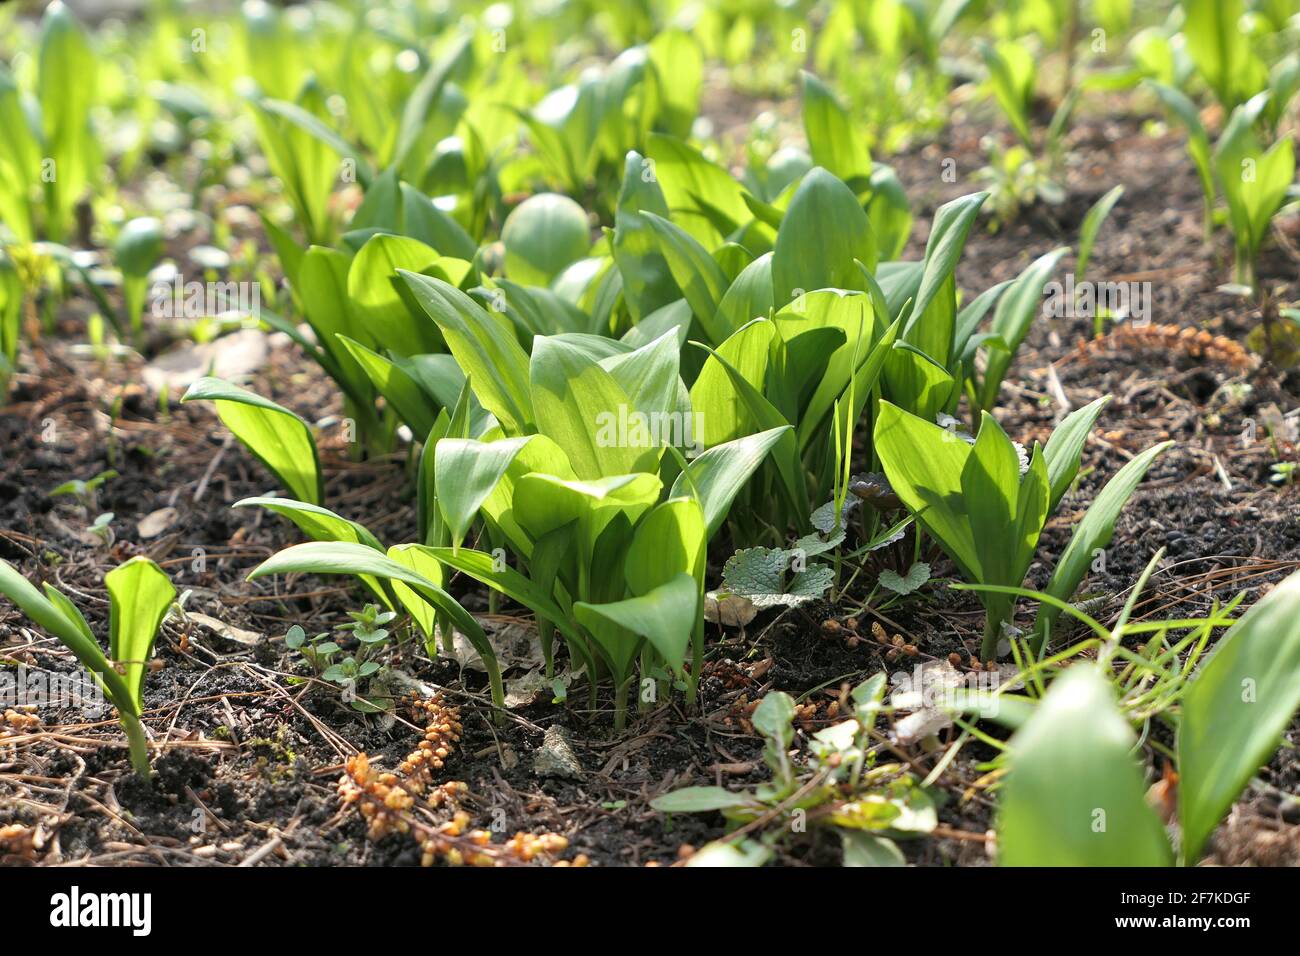 Bärlauch-Pflanzen Allium ursinum wild unter Bäumen wachsen Schatten. Bärlauch, Wildkauz, Ramsons, Buckrams, breitblättriger Knoblauch, Lauchbär. Stockfoto